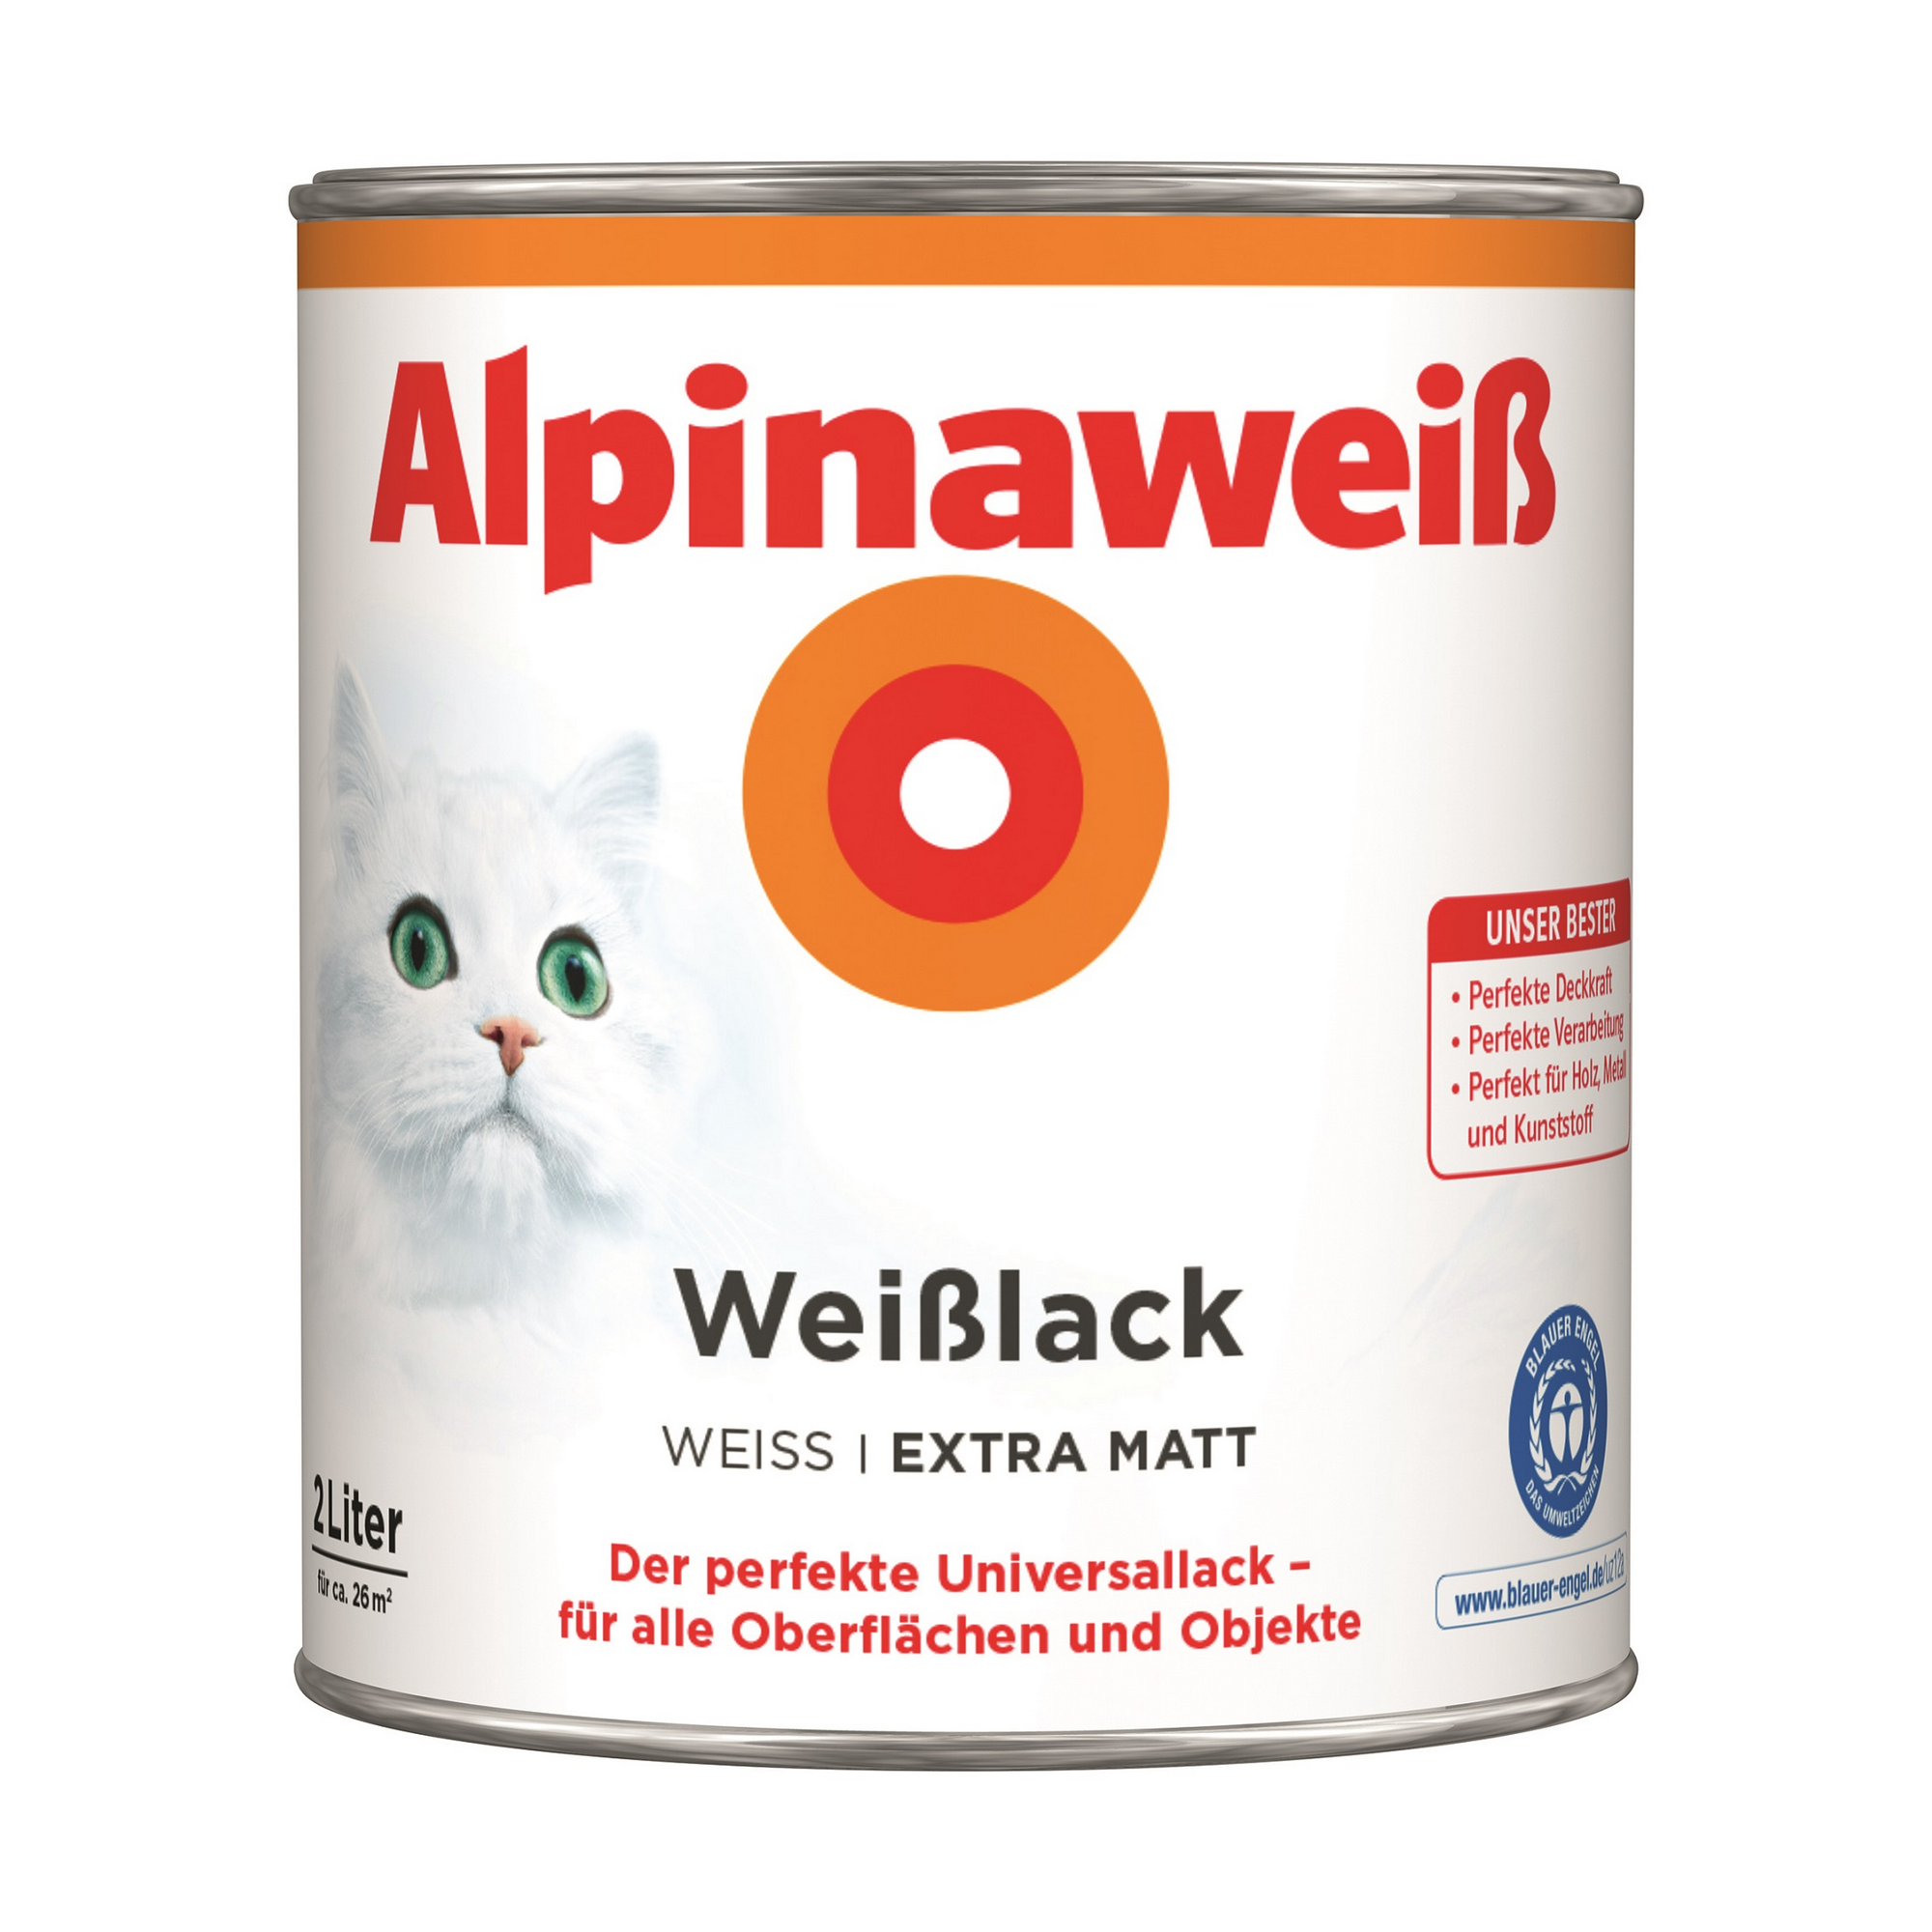 Weißlack 'Alpinaweiß' extramatt 2 l + product picture